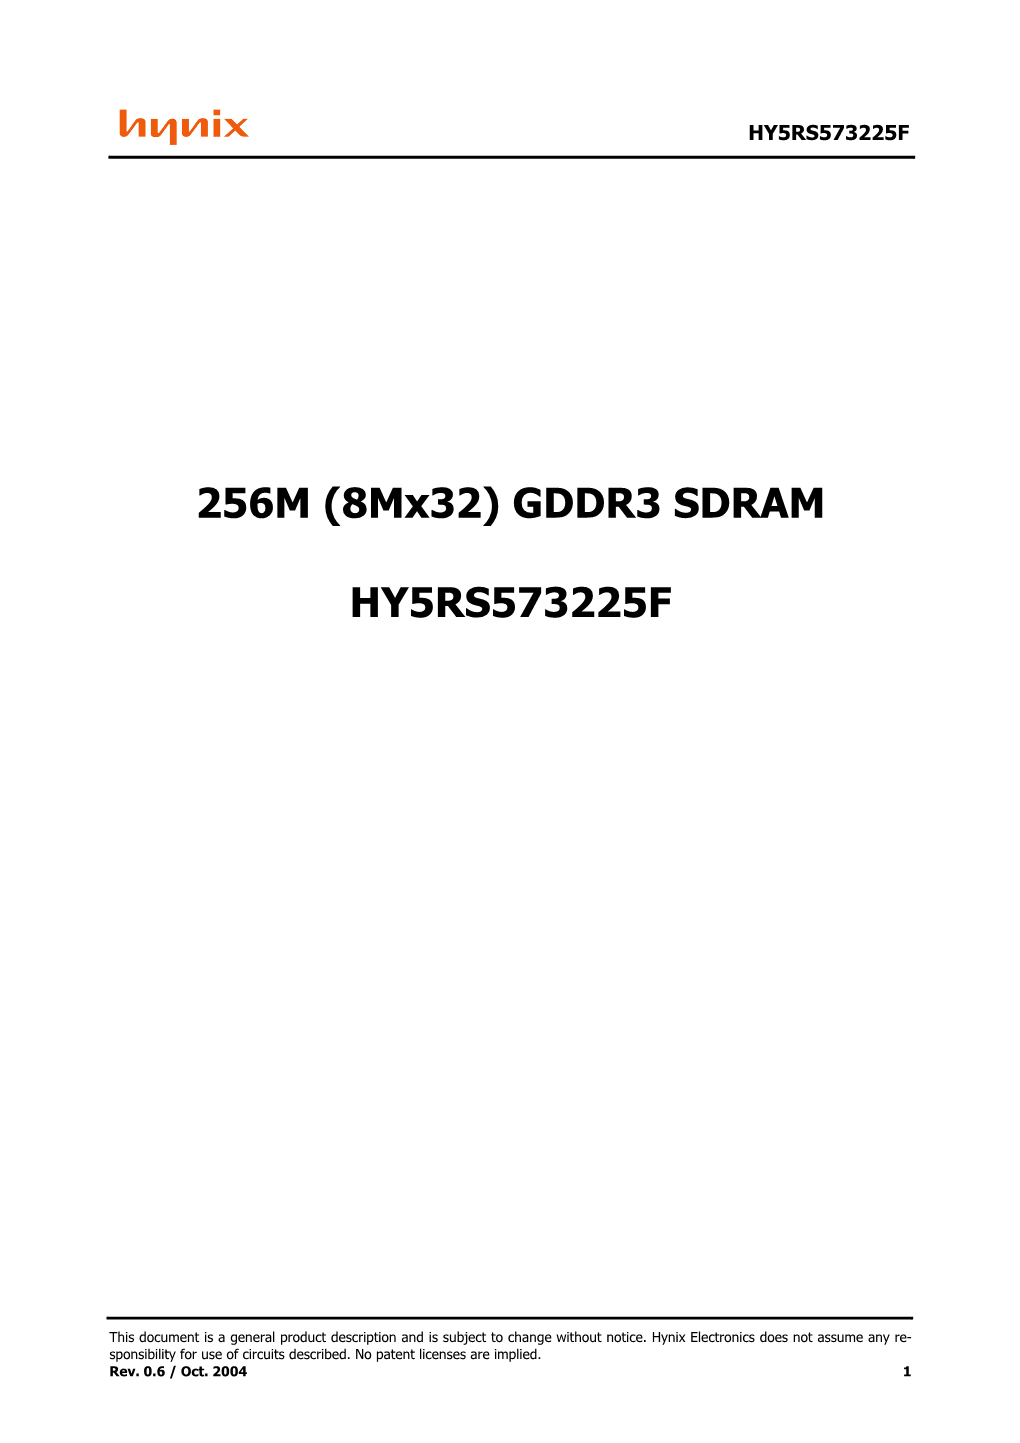 256M (8Mx32) GDDR3 SDRAM HY5RS573225F